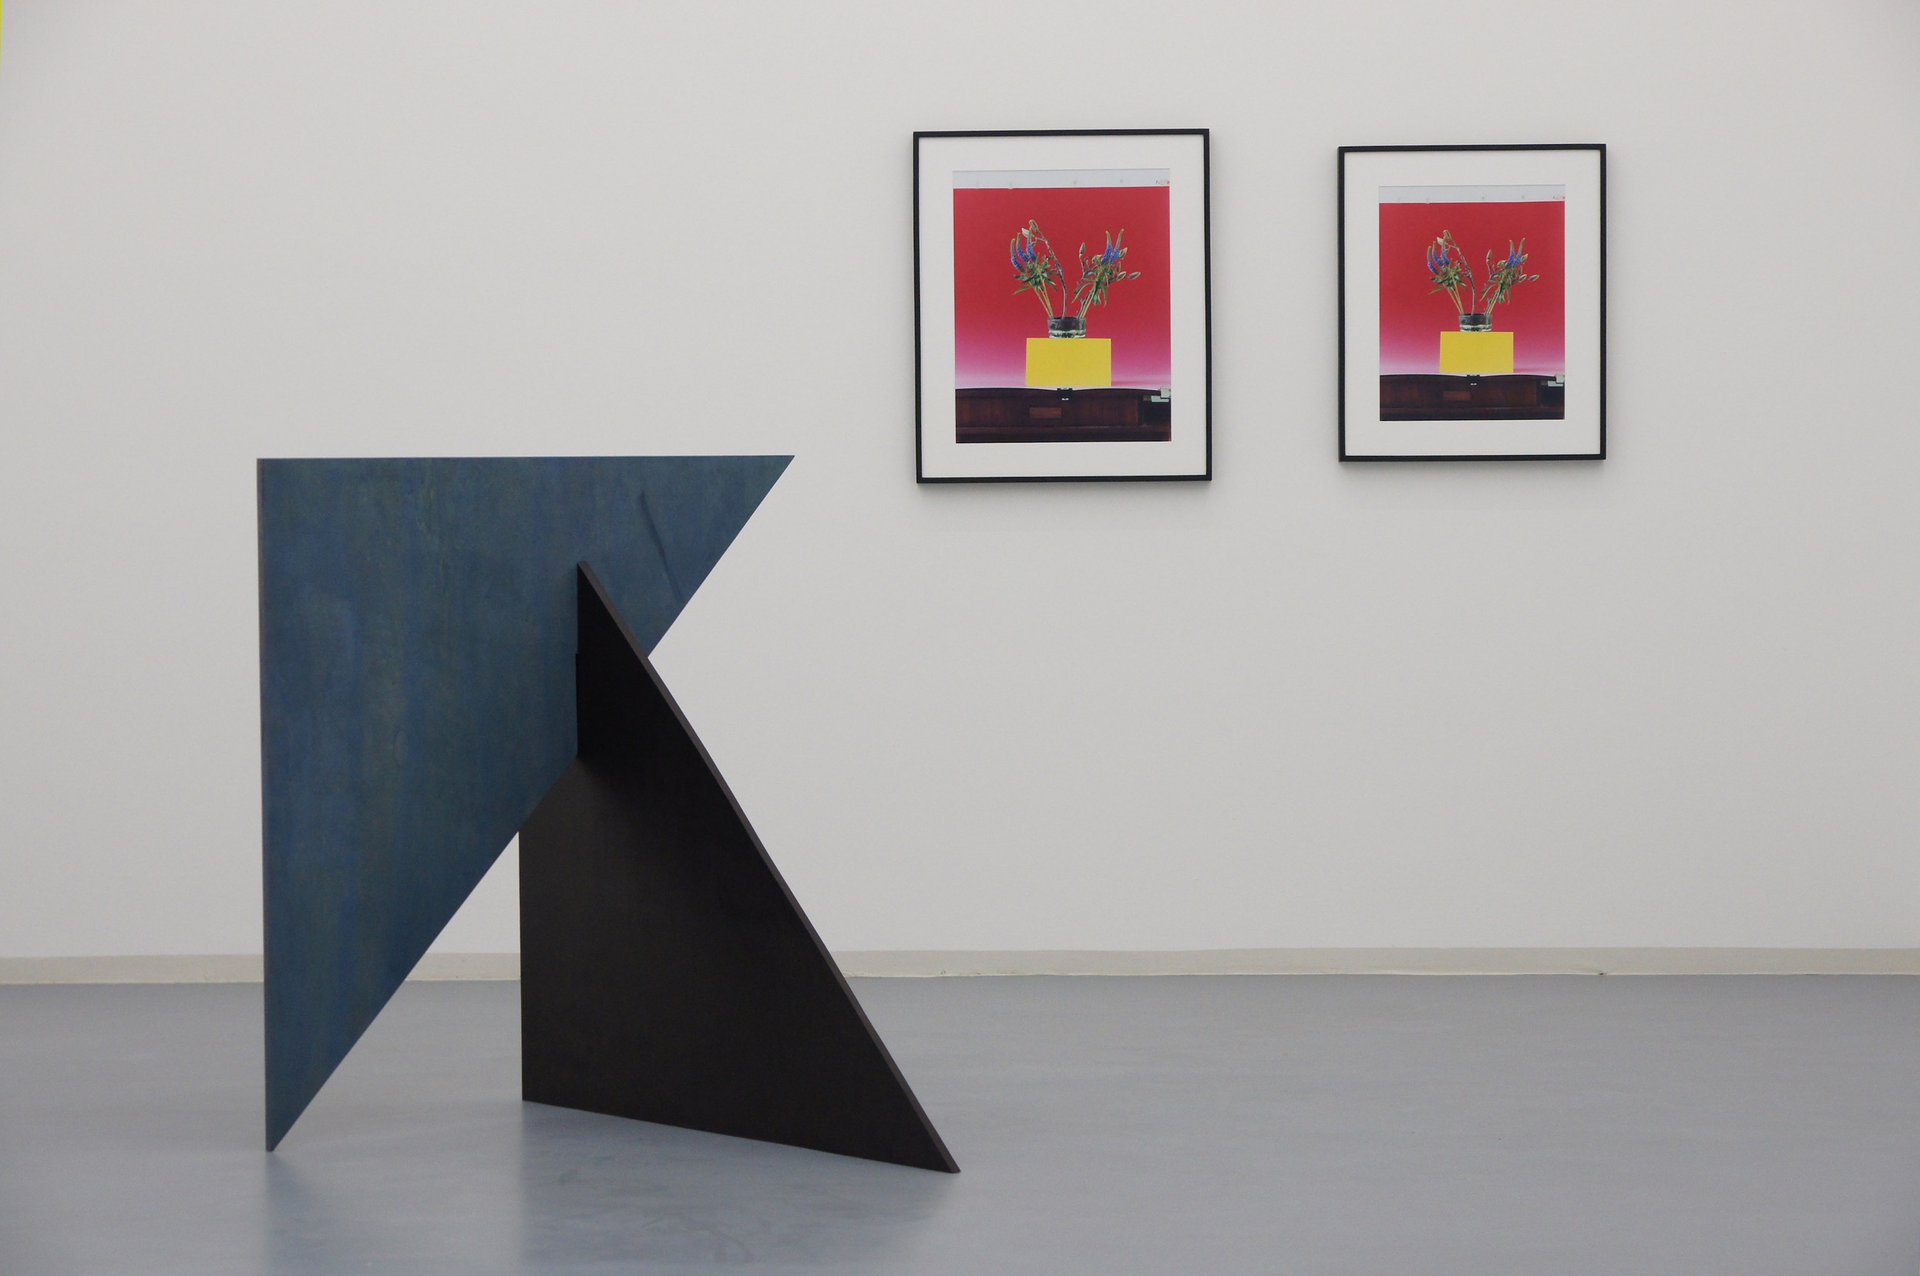 Annette Kelm, Michaela Meise, Hallo aber, Installationsansicht, Bonner Kunstverein, 2012. Photo: Simon Vogel.